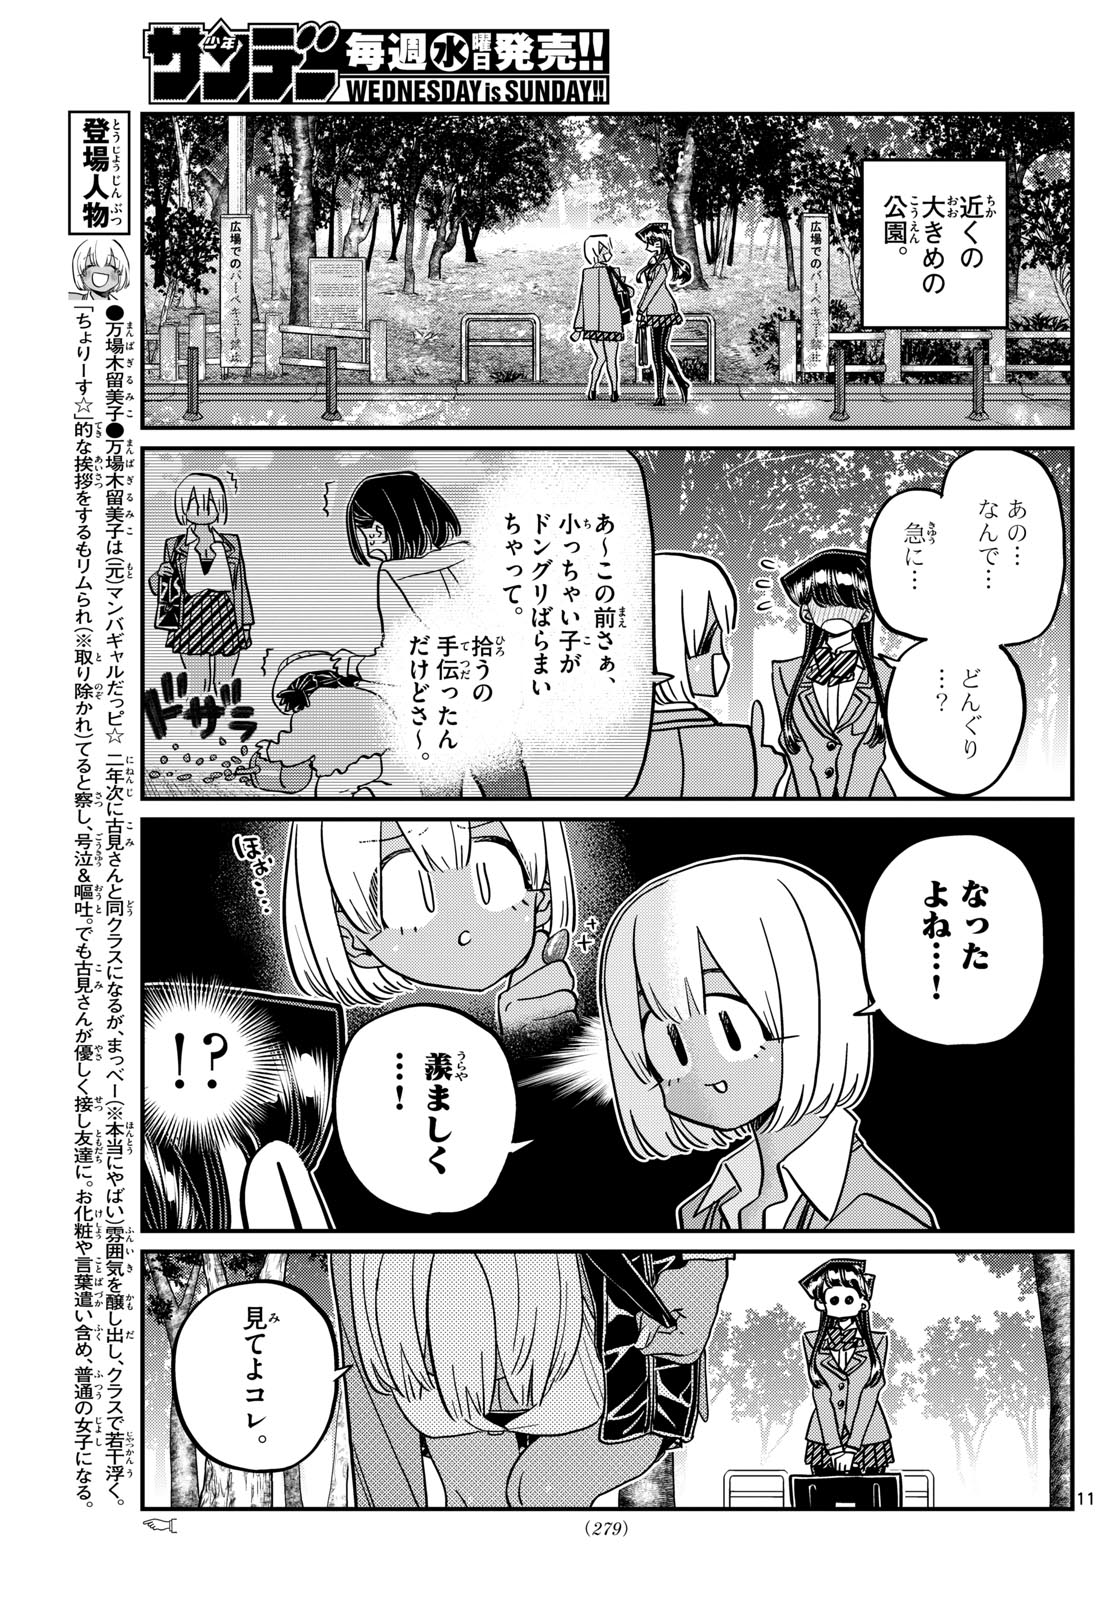 Komi-san wa Komyushou Desu - Chapter 459 - Page 2